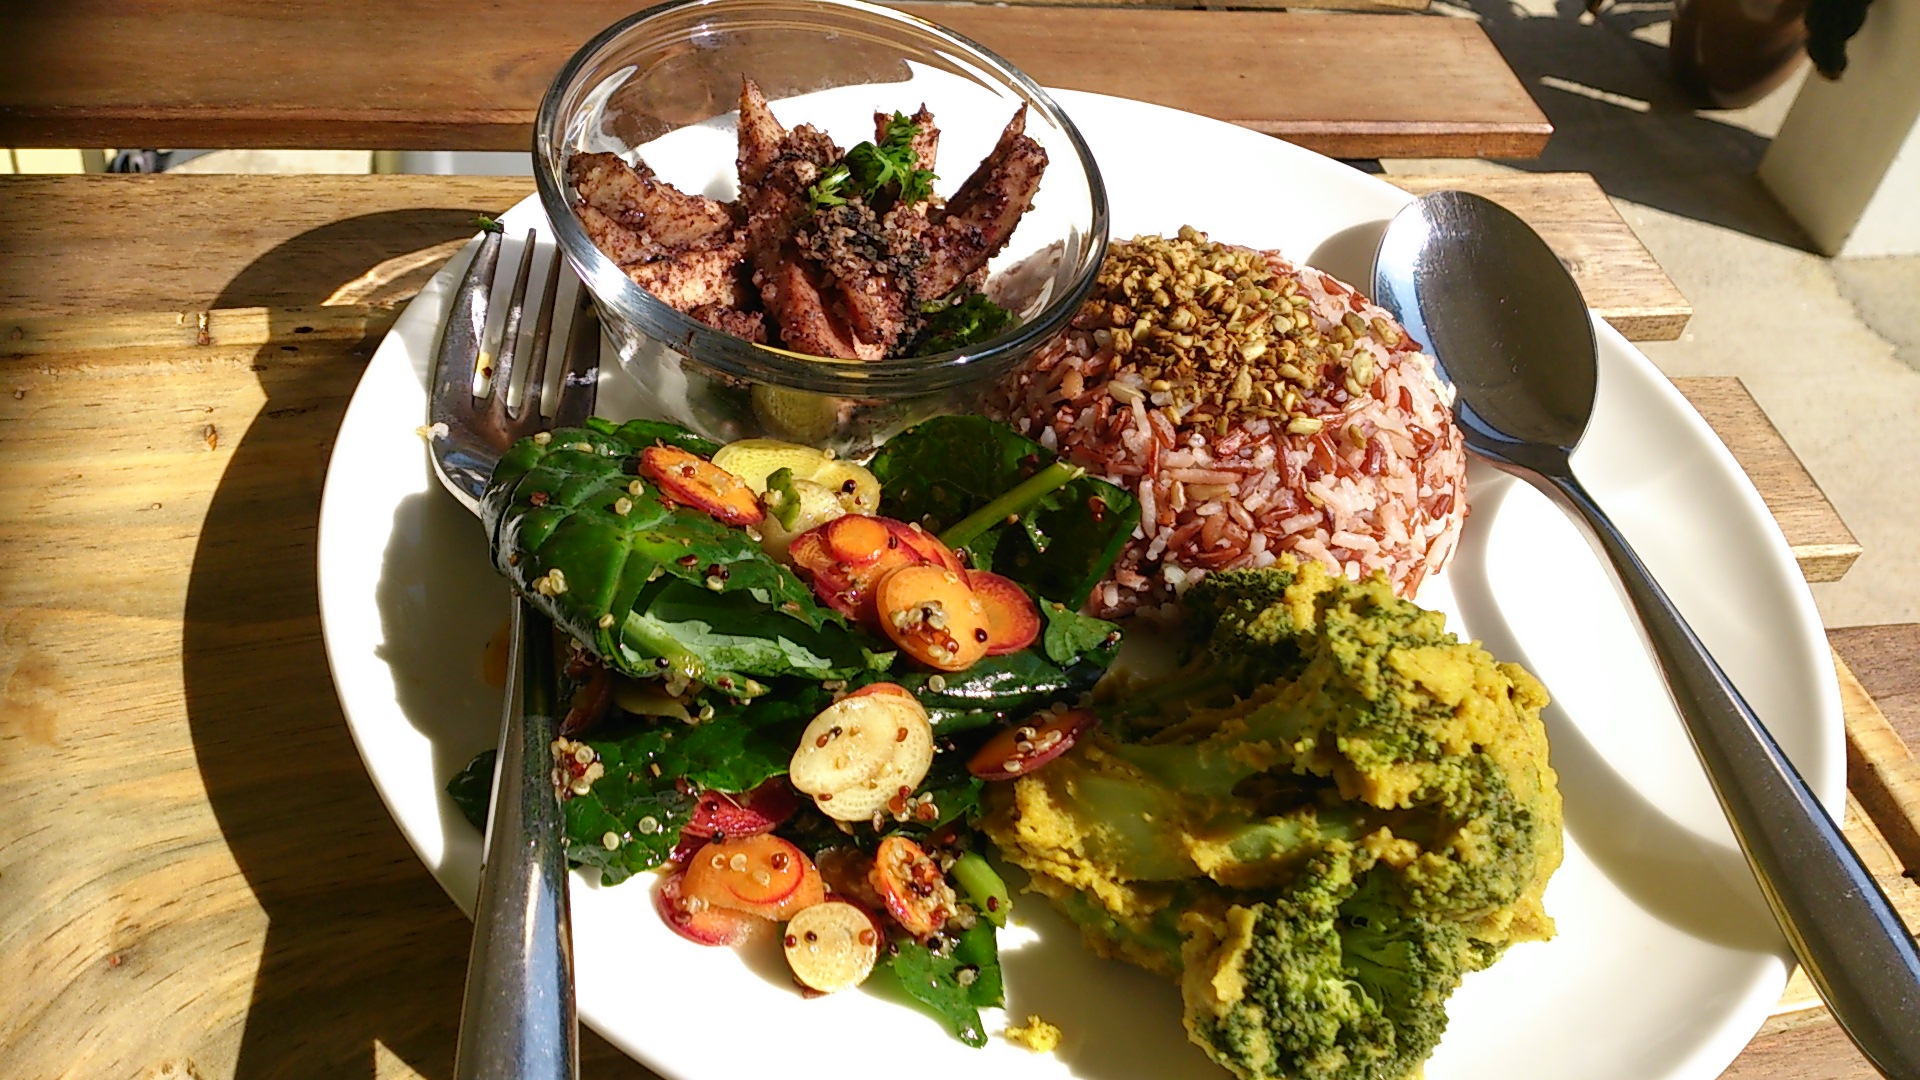 健康、美味及低碳，是綠匯學苑的低碳餐廳 「慧食堂」的食品特色。